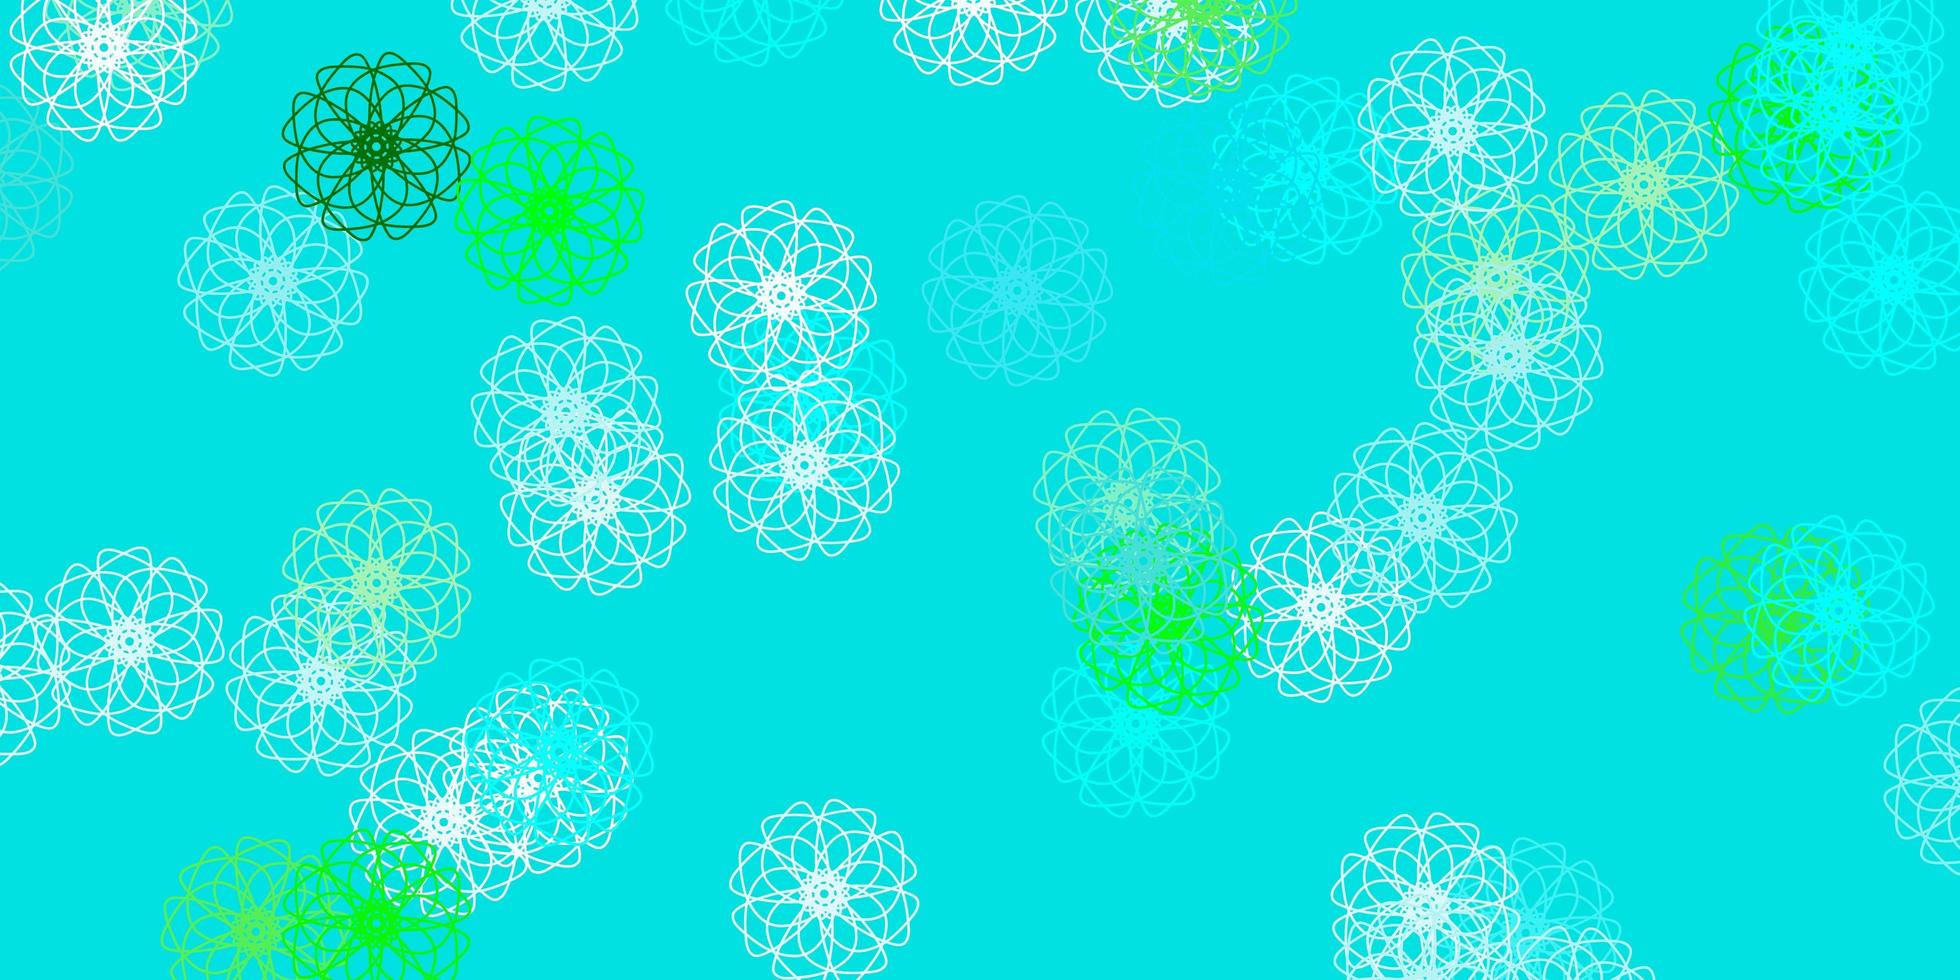 ljusblå, grön vektor doodle bakgrund med blommor.